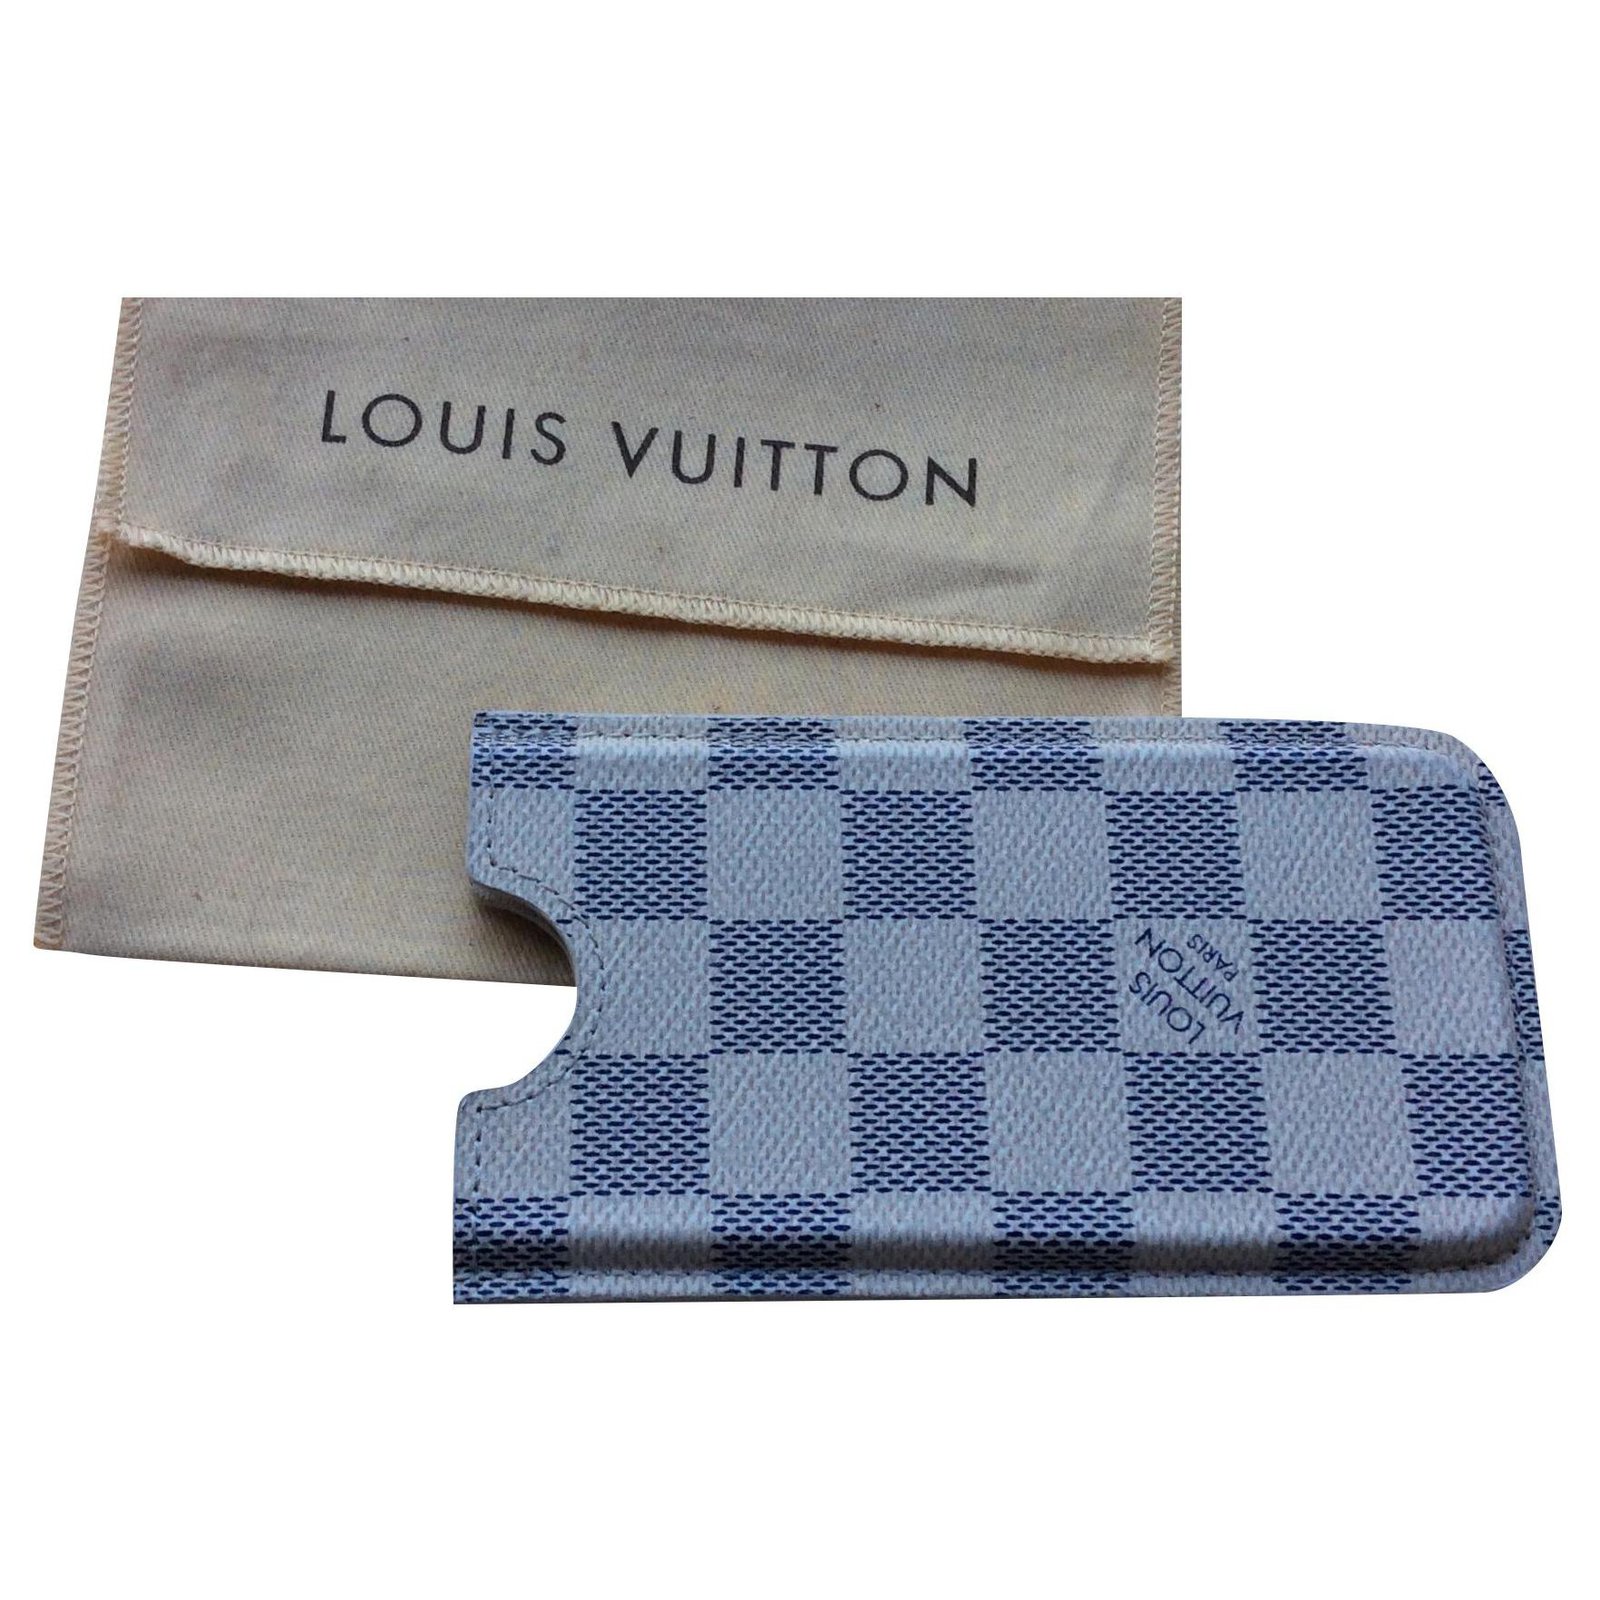 Louis Vuitton phone case Damier Azur canvas reconverted business